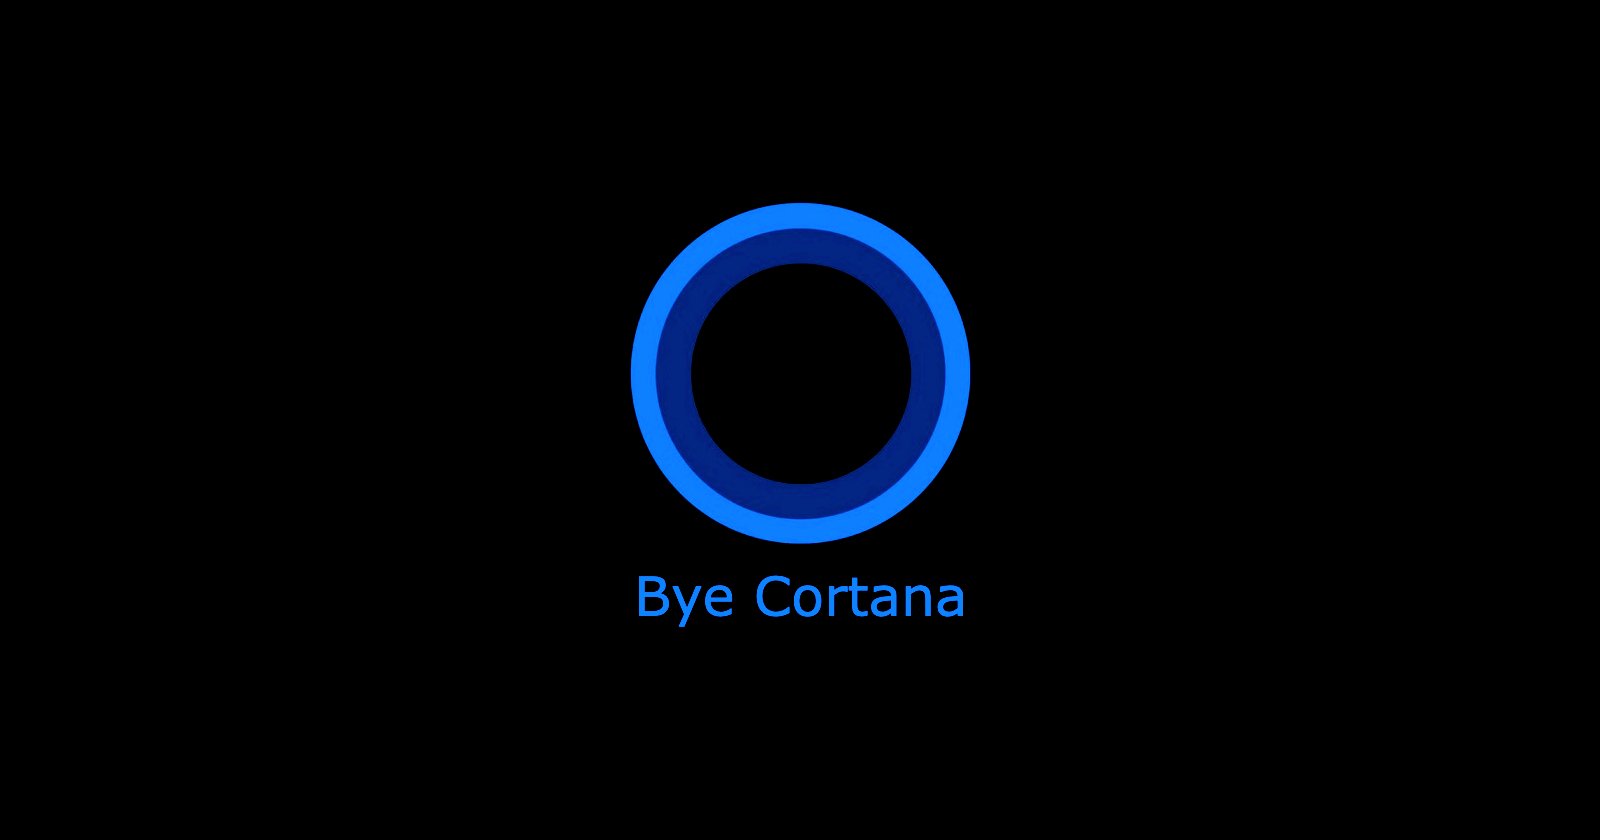 Bye Cortana